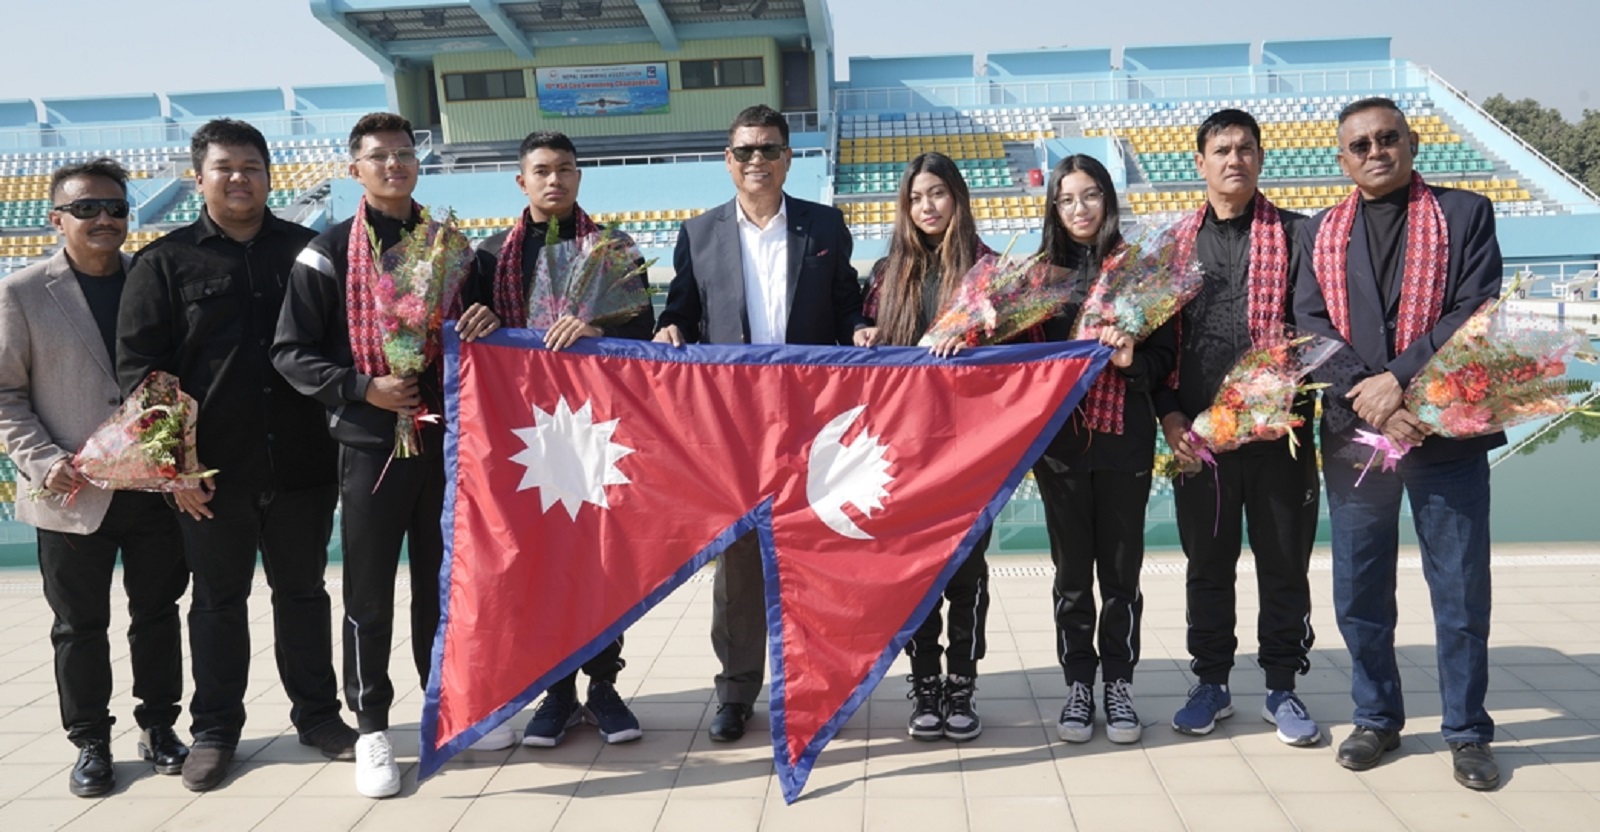 विश्व पौडी च्याम्पियनसिपमा नेपालका ४ खेलाडीको सहभागीता